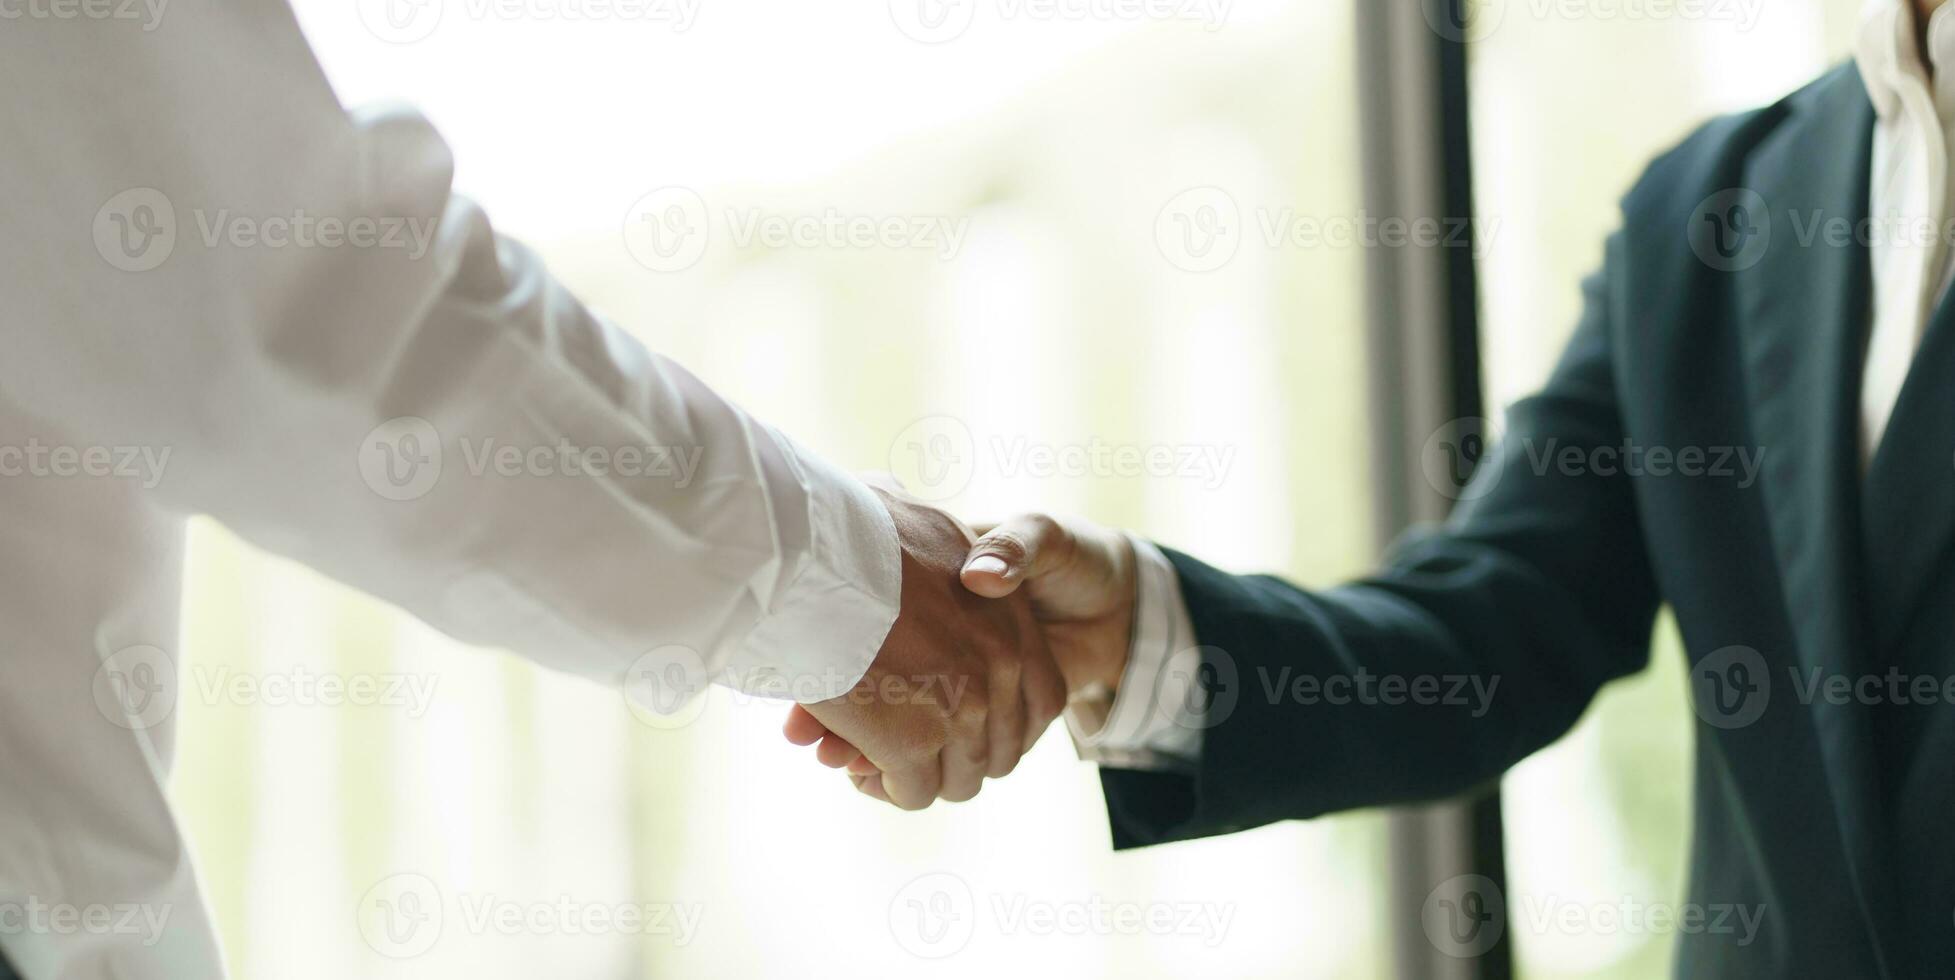 homme d'affaire tremblement mains réussi fabrication une accord. mans poignée de main. affaires Partenariat réunion concept photo